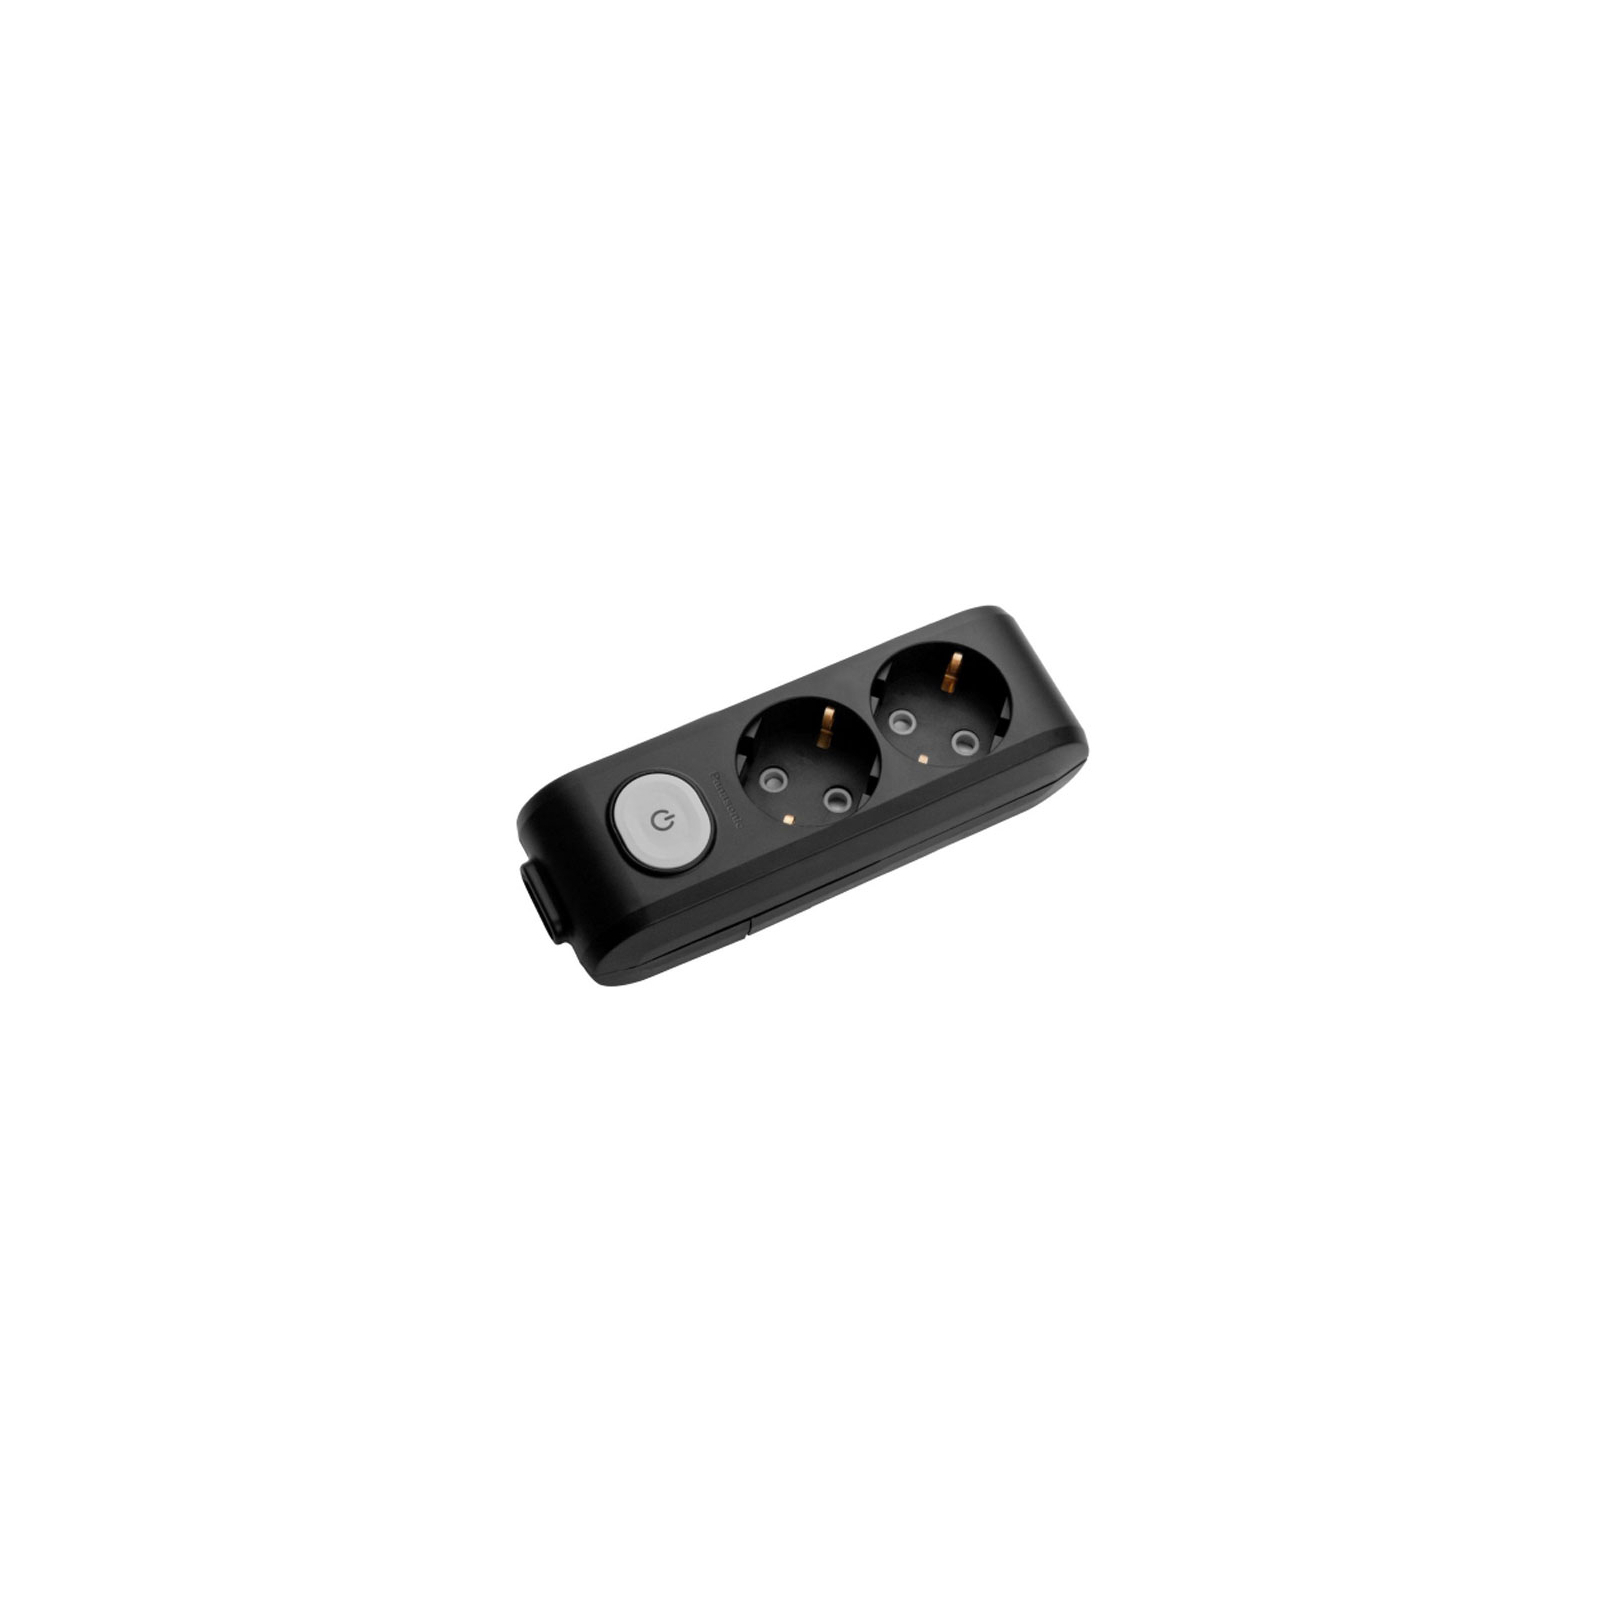 Колодка для удлинителя Panasonic X-tendia 2 гнезда black (WLTA04202BL-UA)